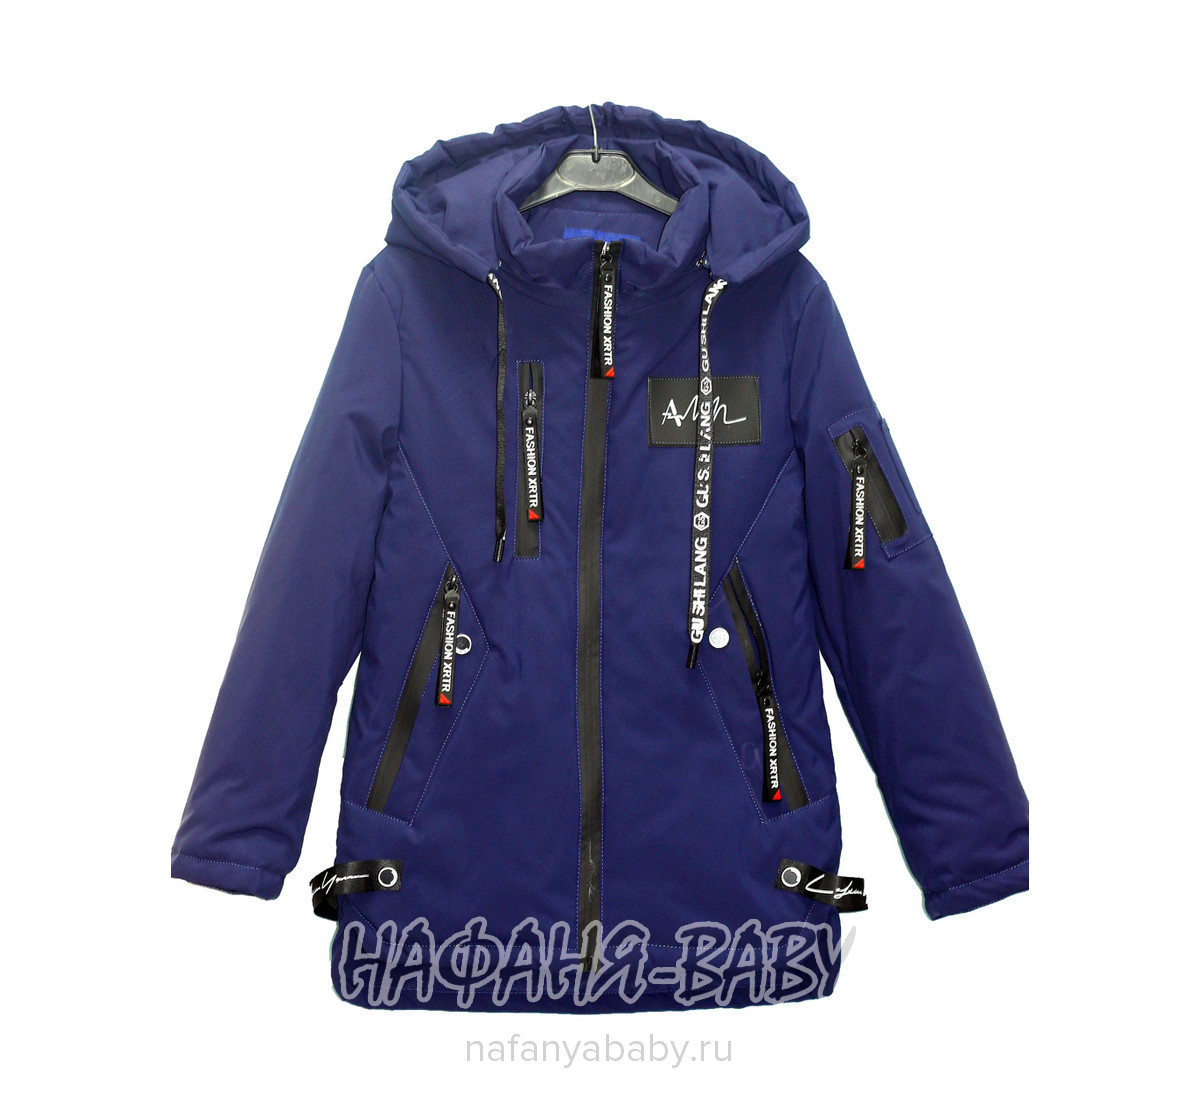 Детская куртка XRTR арт: 620, 10-15 лет, 5-9 лет, цвет темно-синий, оптом Китай (Пекин)